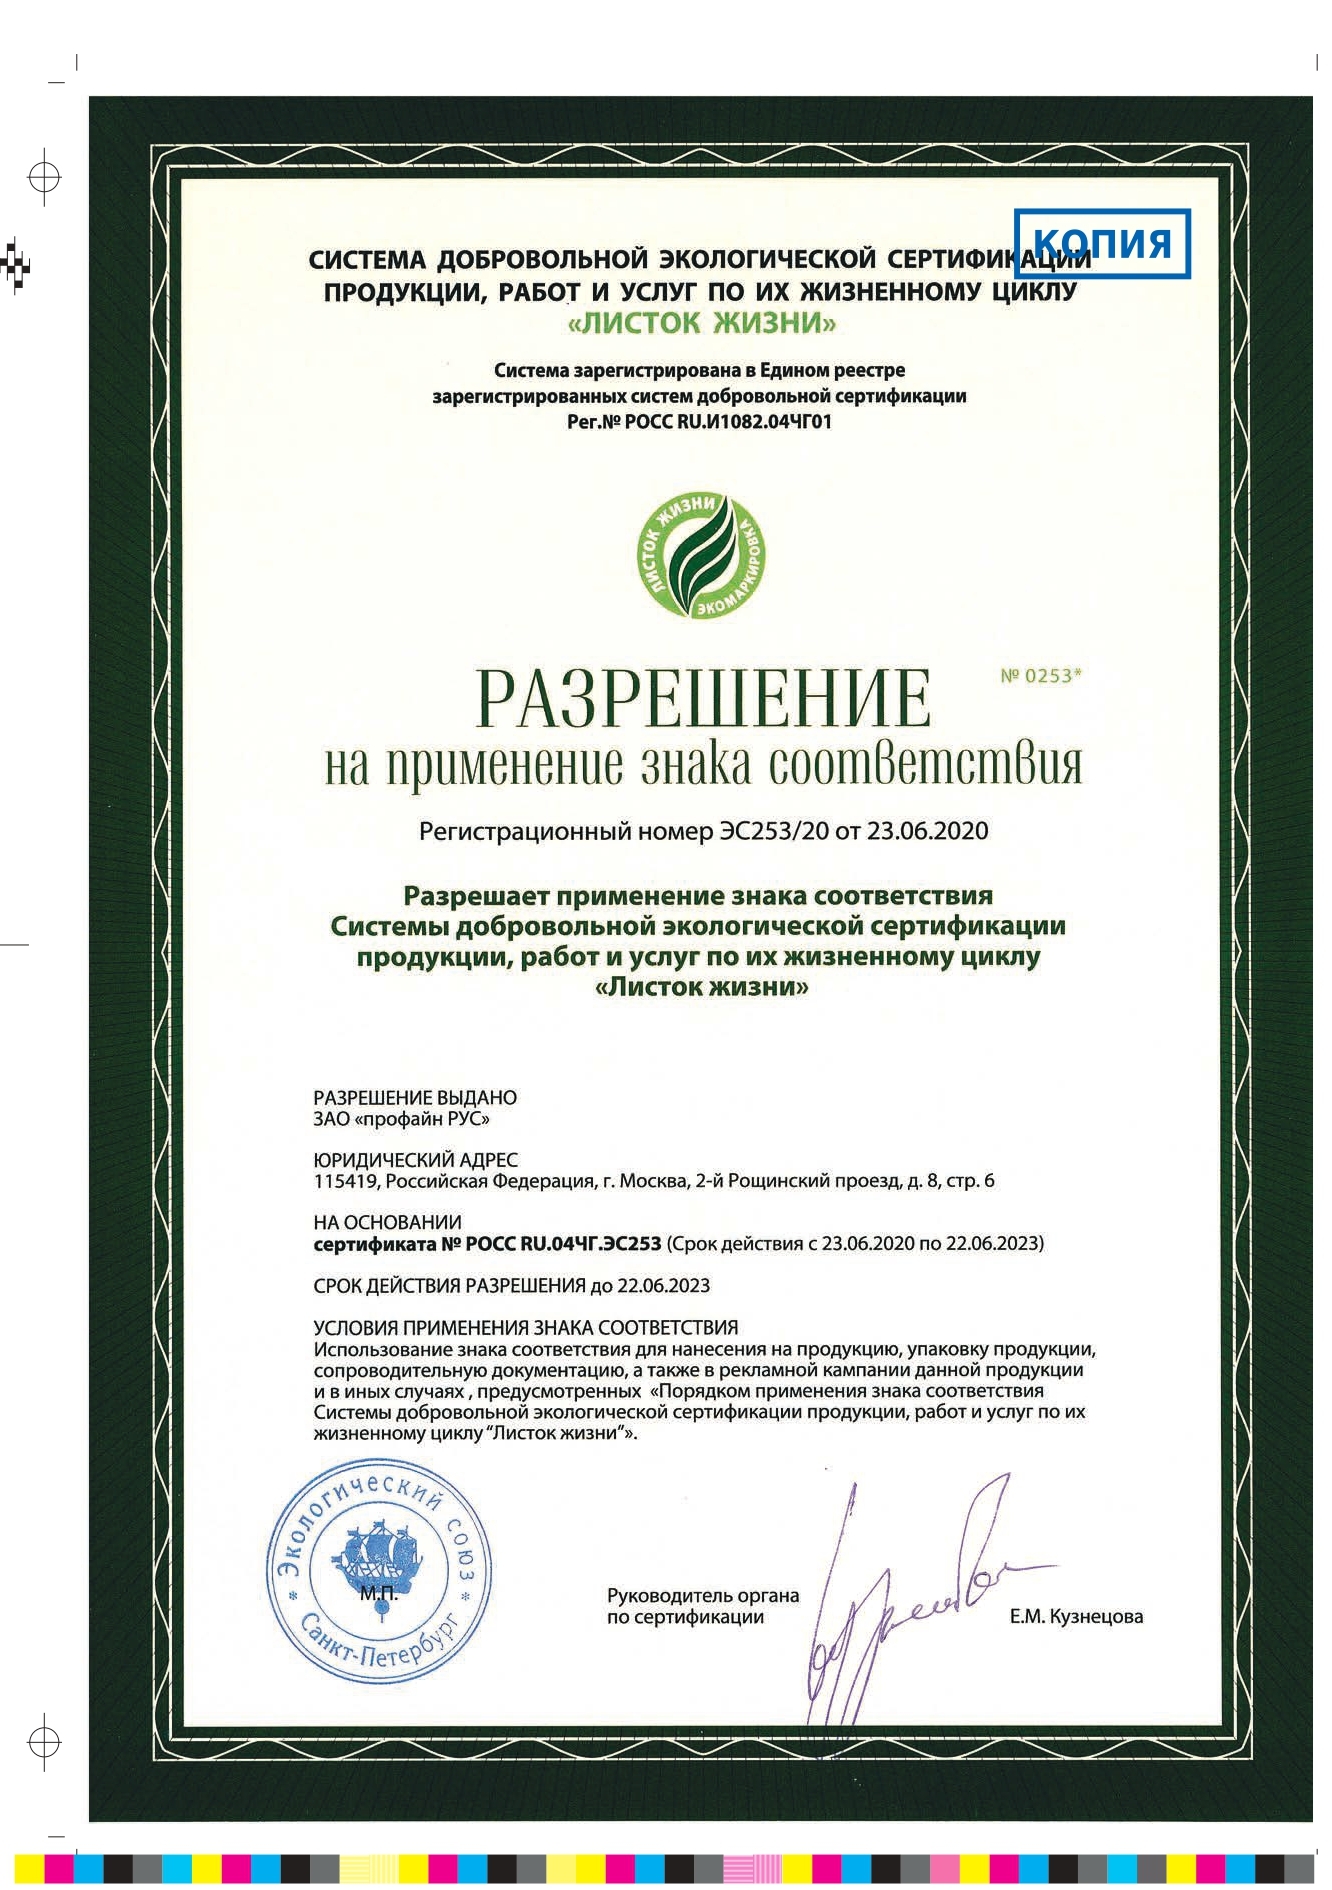 сертификат листок жизни_page-0001 (1)